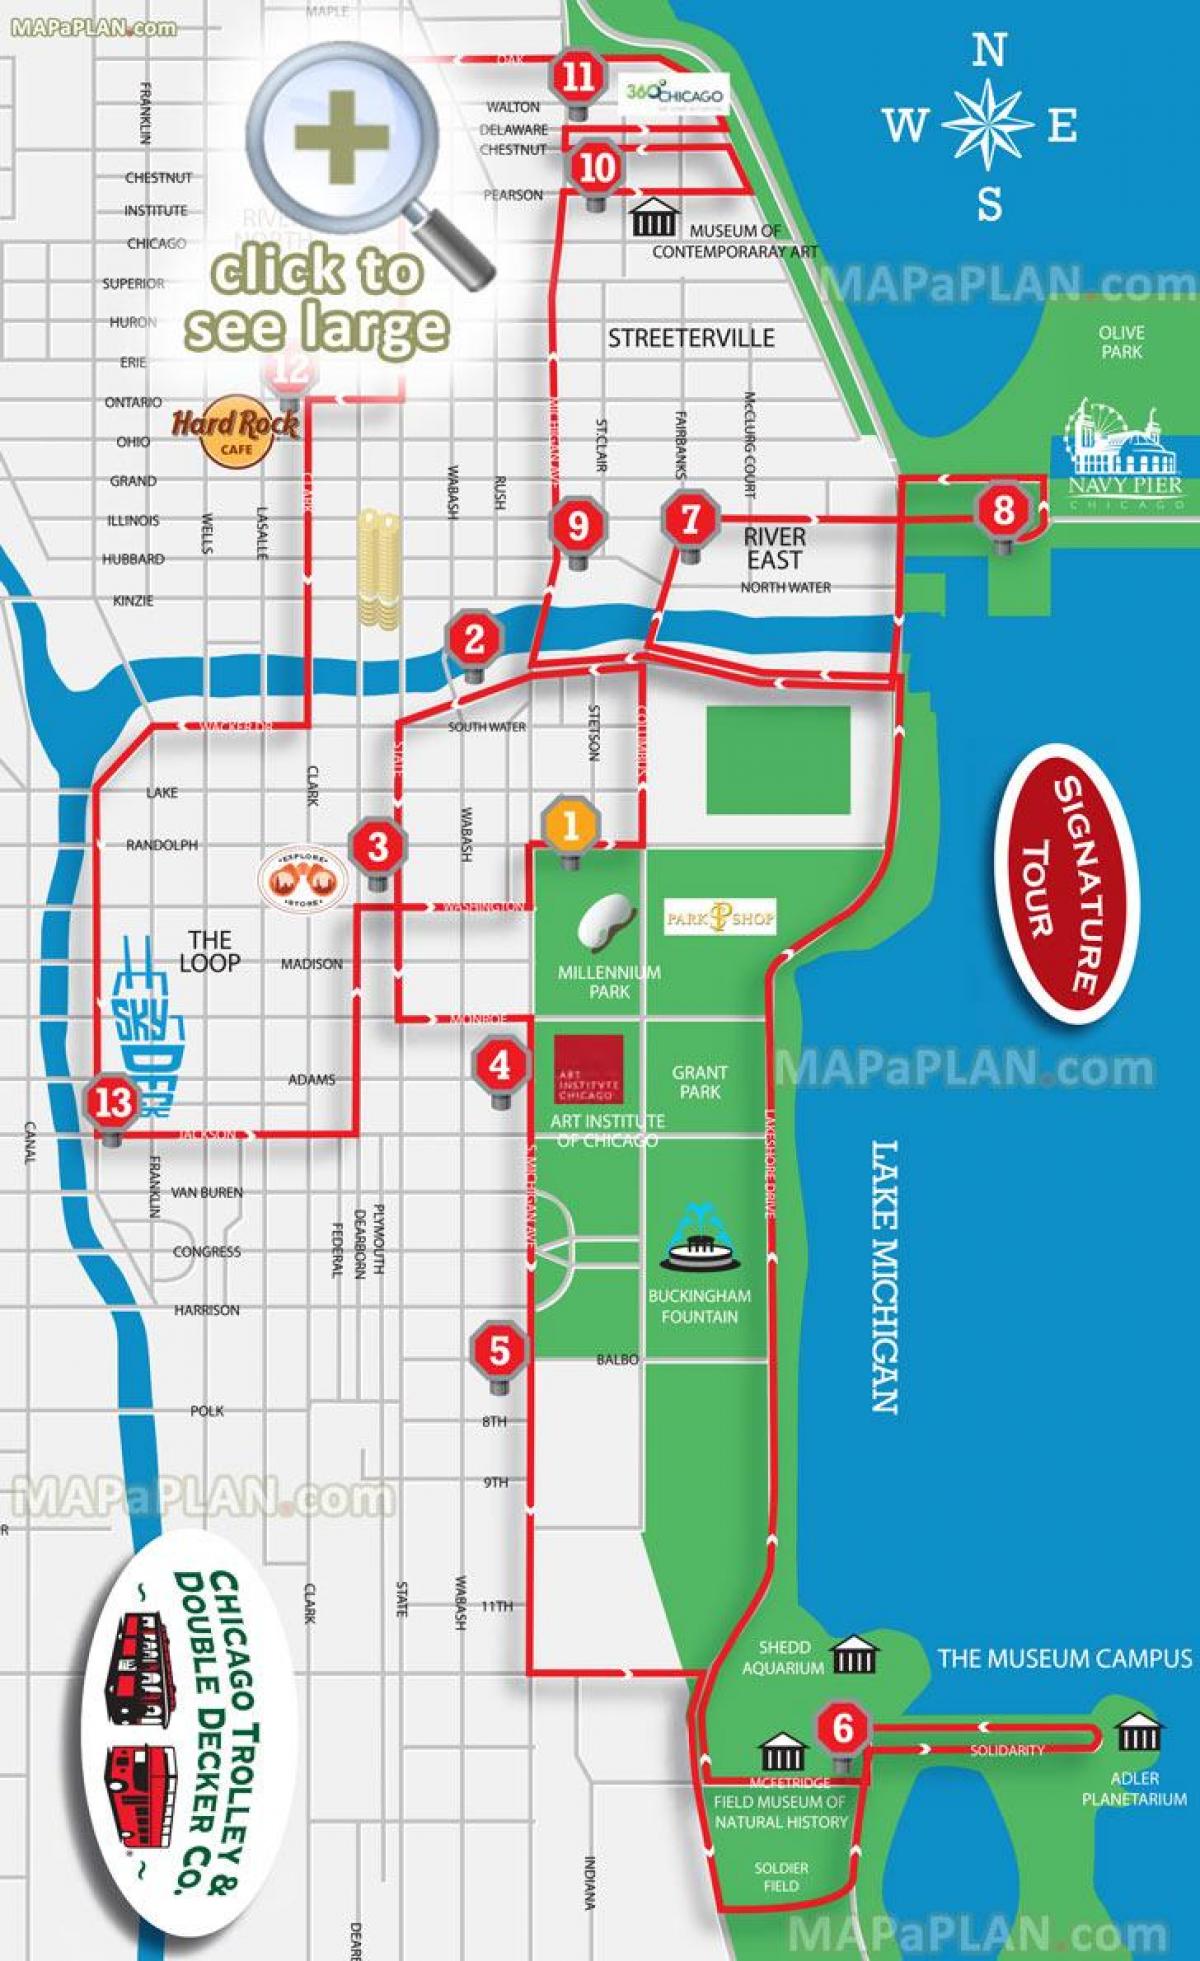 Чикаго голема автобуска турнеја мапа